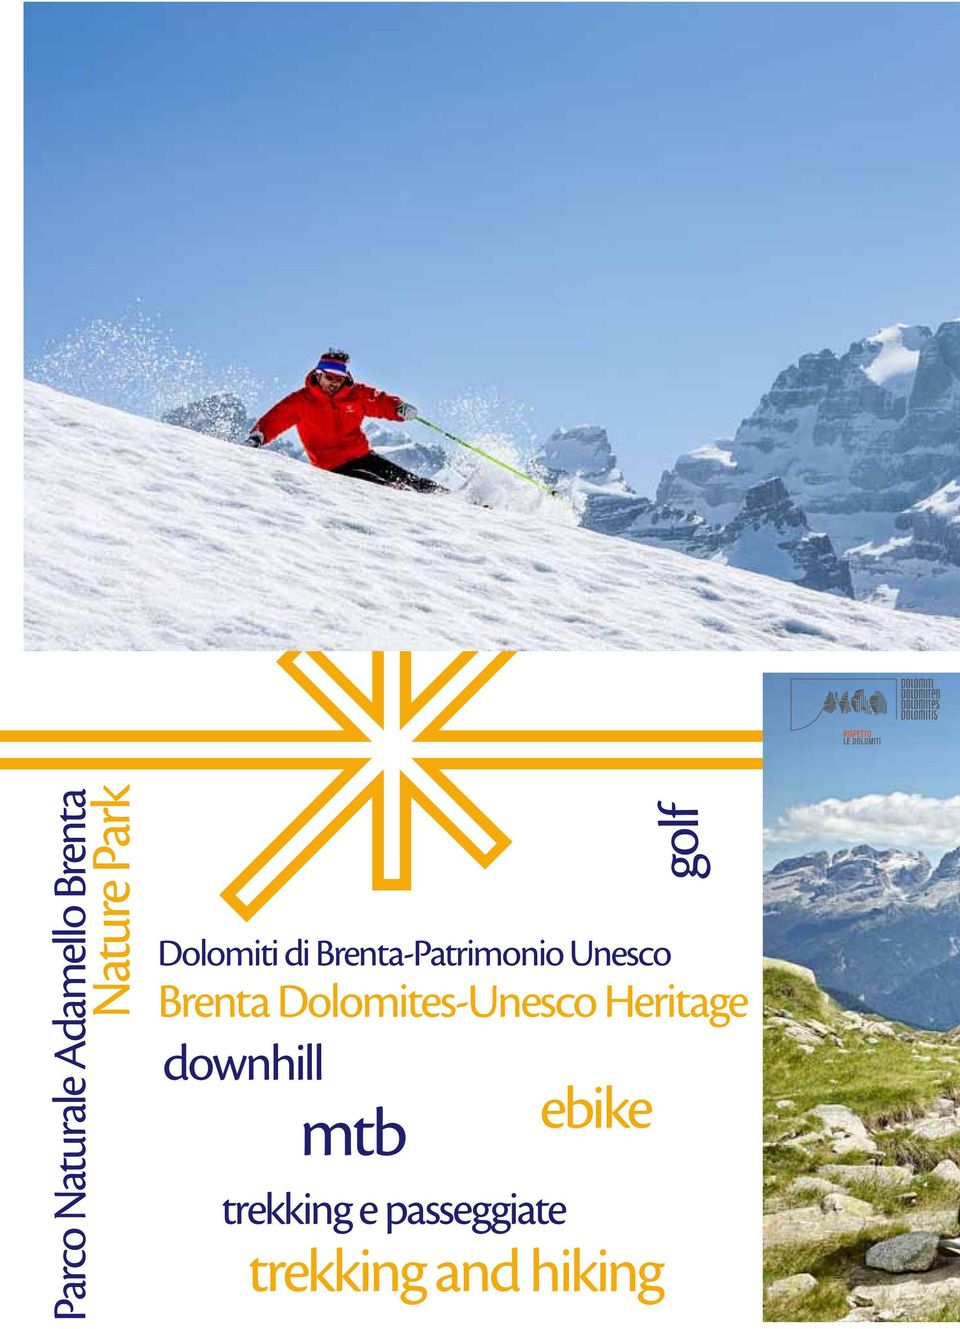 Dolomites-Unesco Heritage downhill mtb